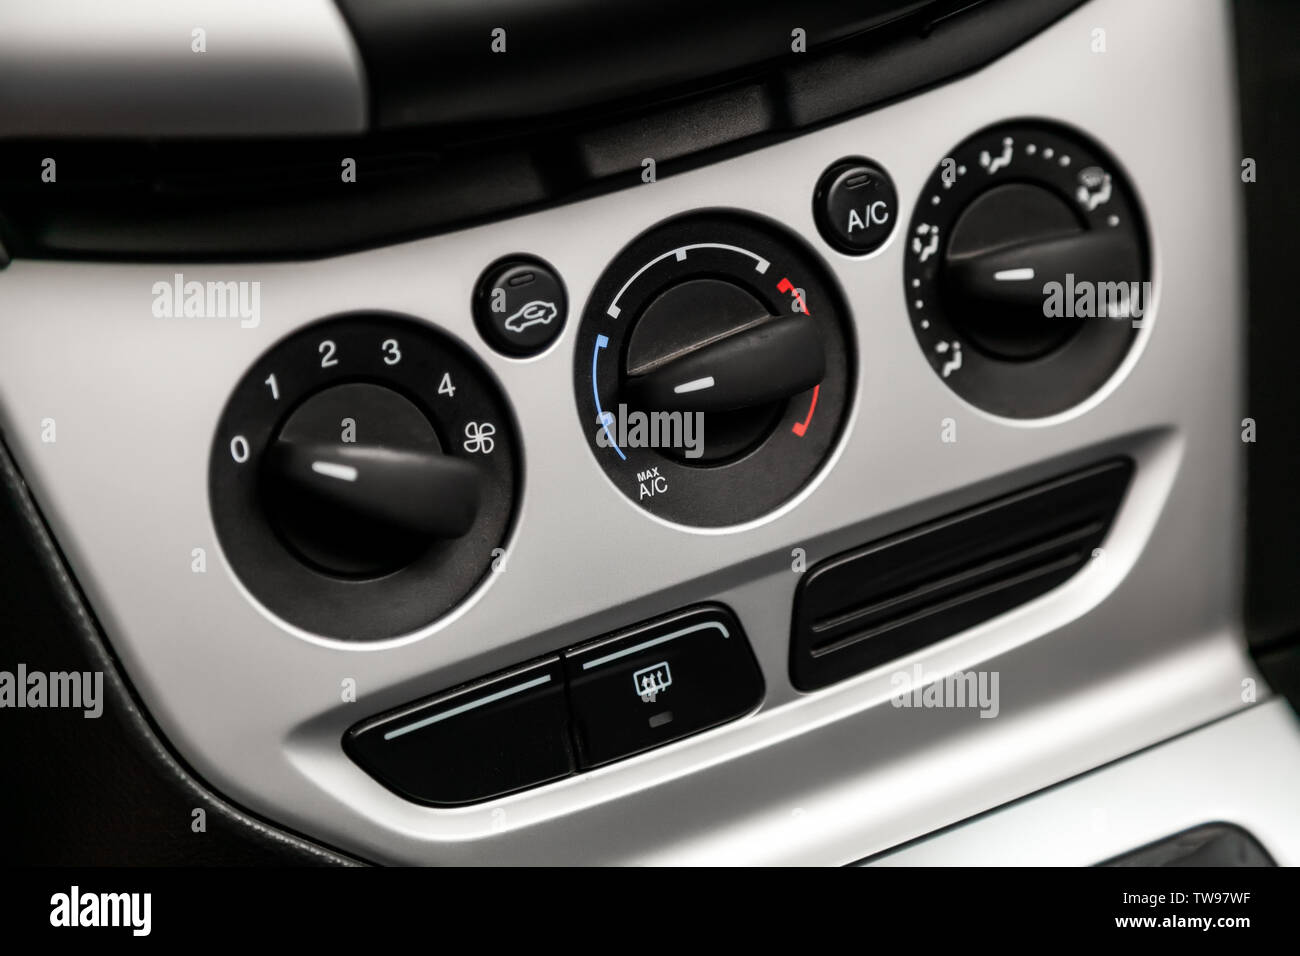 https://c8.alamy.com/compde/tw97wf/black-detail-mit-der-taste-klimaanlage-in-einem-auto-close-up-auto-luftung-und-klimaanlage-details-und-kontrollen-der-modernen-auto-tw97wf.jpg